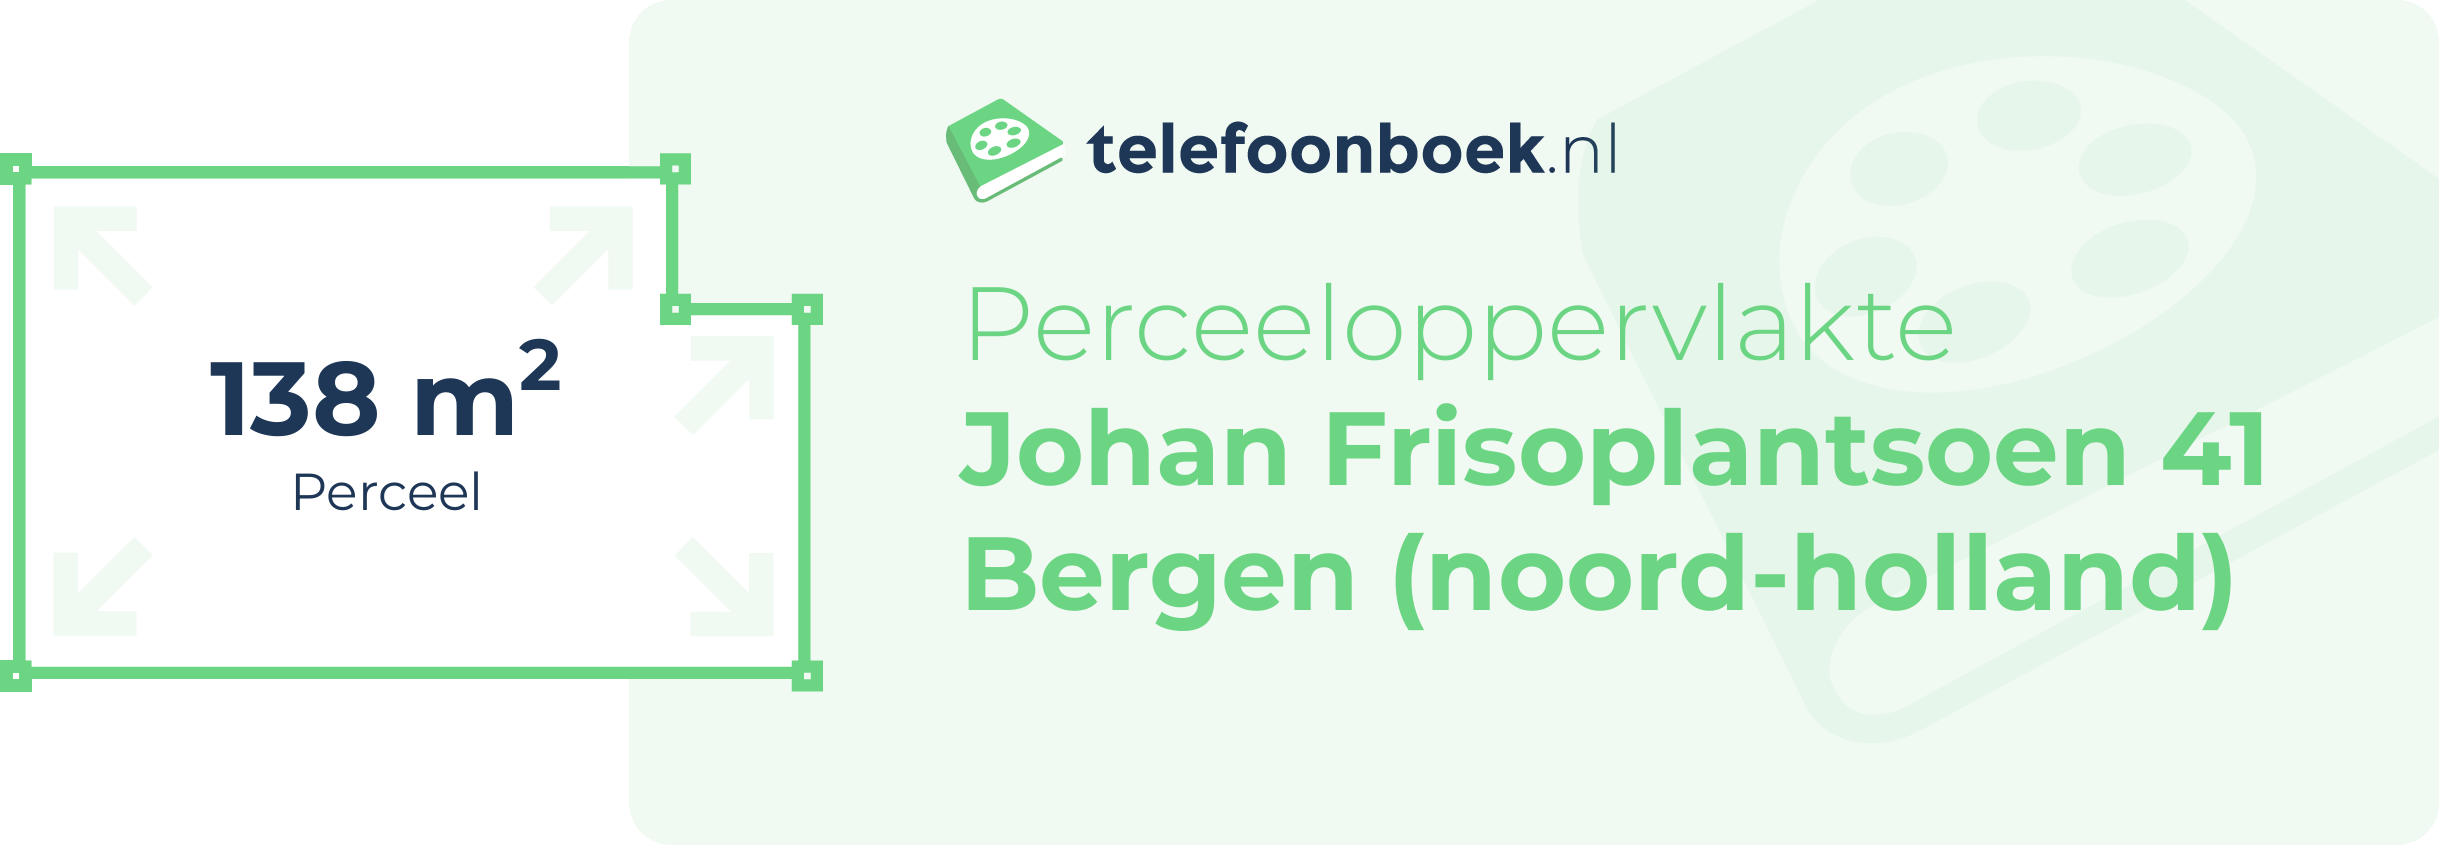 Perceeloppervlakte Johan Frisoplantsoen 41 Bergen (Noord-Holland)